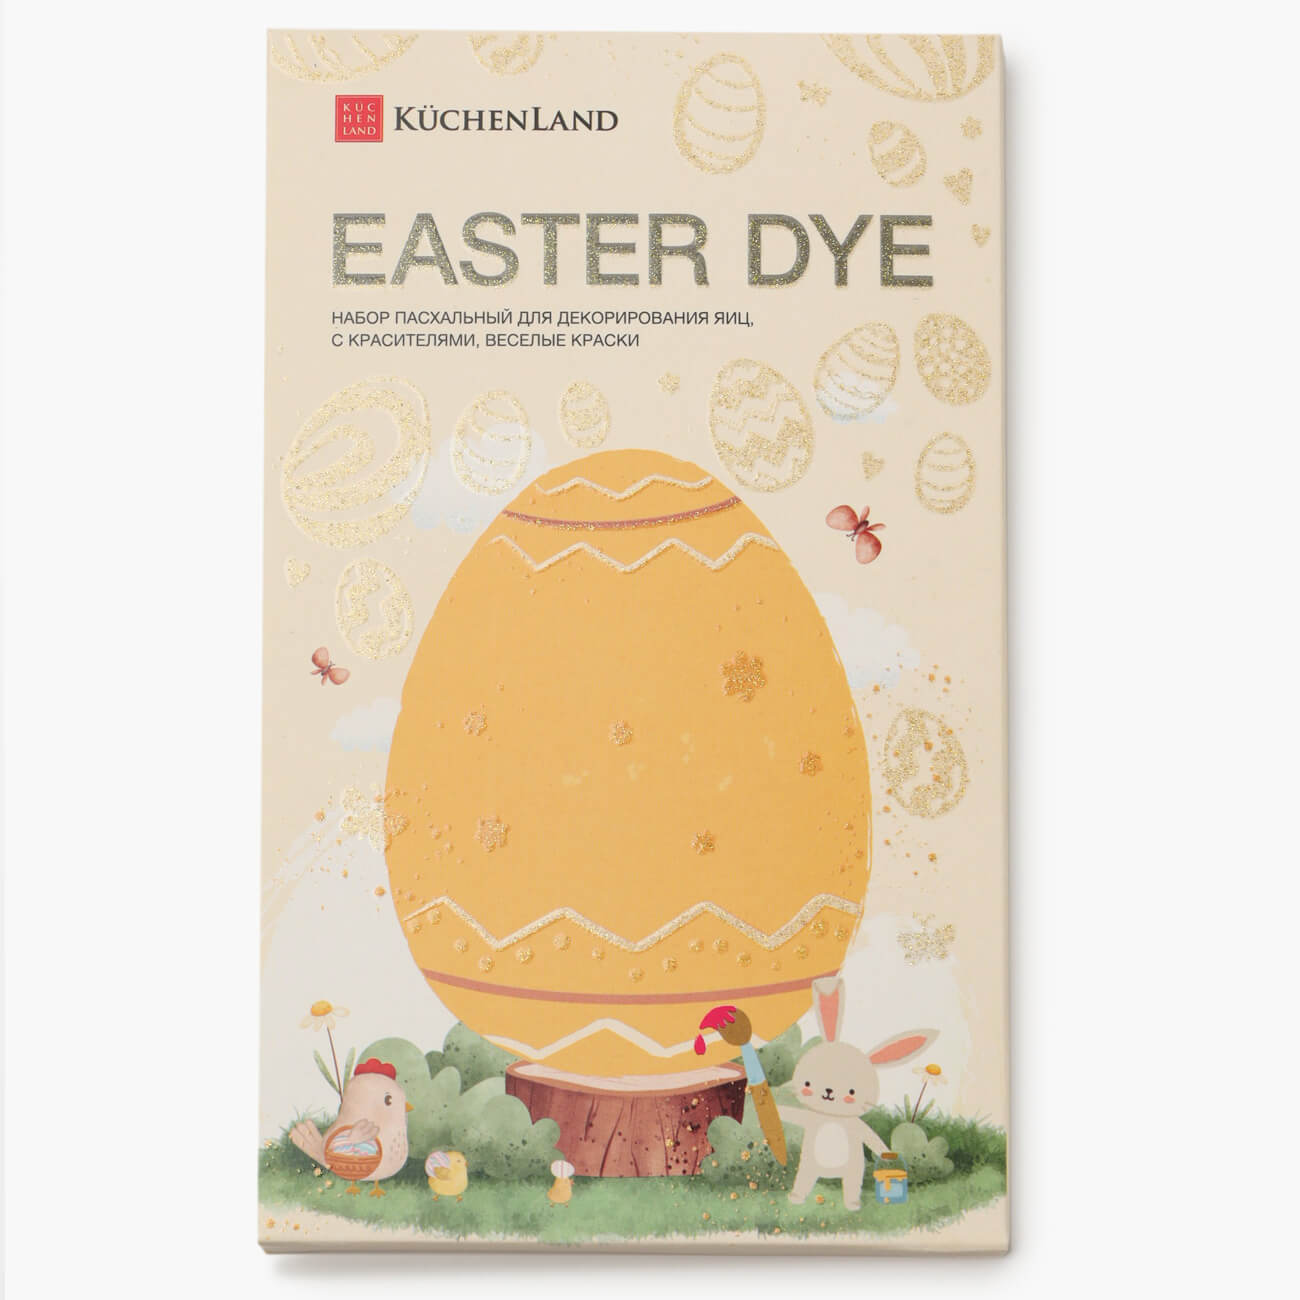 Набор пасхальный для декорирования яиц, 7 цветов/13 пр, Веселые краски, Easter dye набор приманок kasandra 4 29 10 9см mix 5 цветов 100шт helios